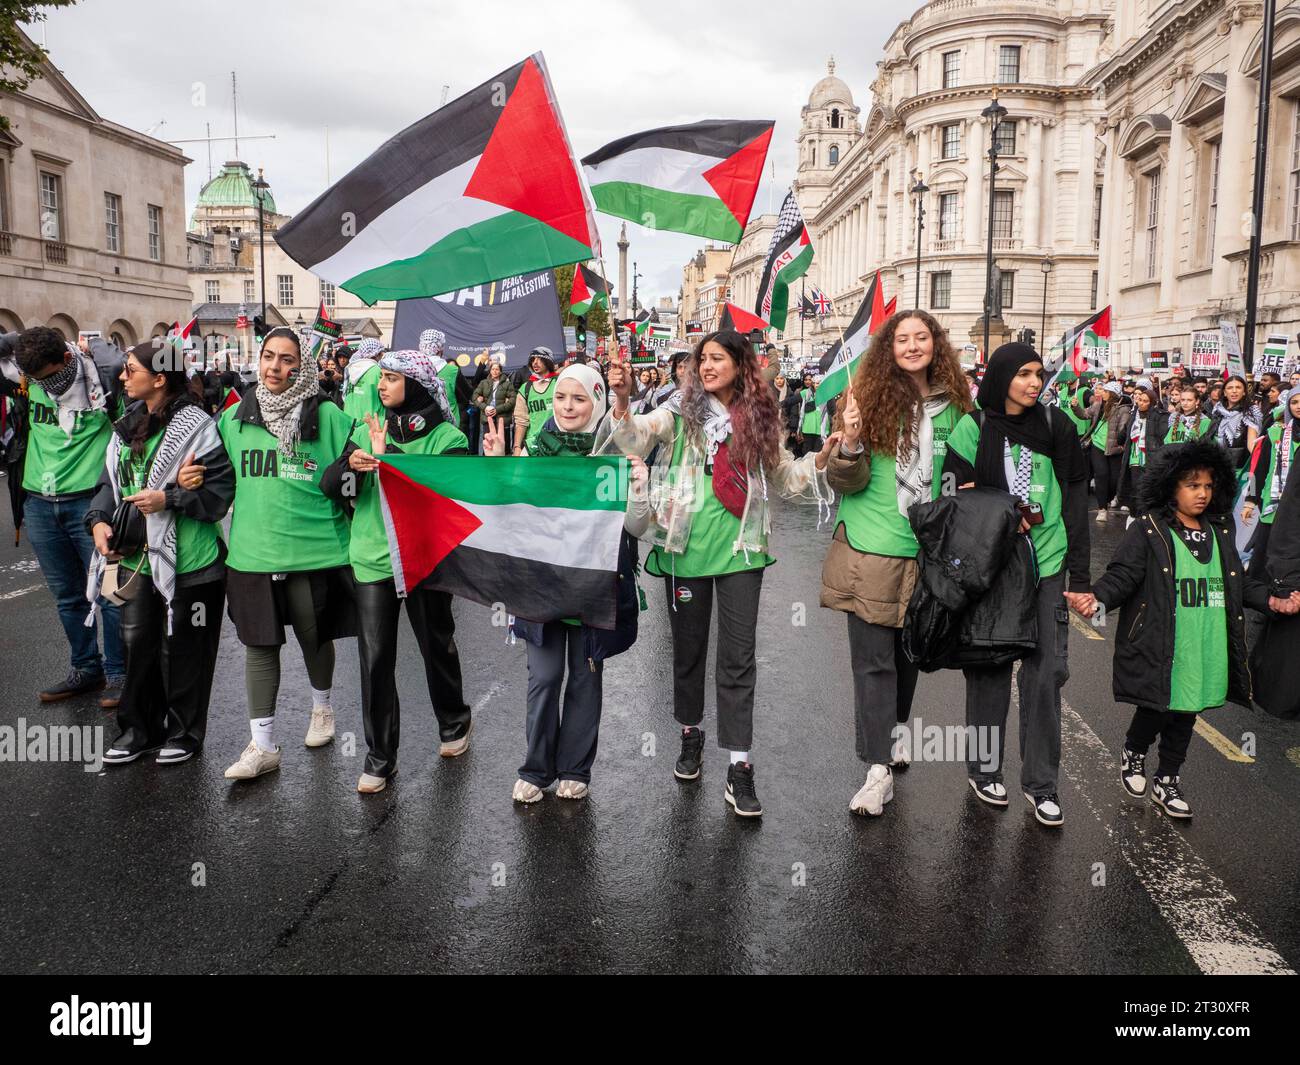 Freunde von Al-Aqsa FOA pro-palästinensische Demonstranten in London, Großbritannien, bei der Demonstration „National March for Palestine“ (nationaler Marsch für Palästina) den Krieg im Gazastreifen stoppen, marschieren, um gegen das israelische Palästinenserkonfikt über den Gazastreifen zu protestieren Stockfoto